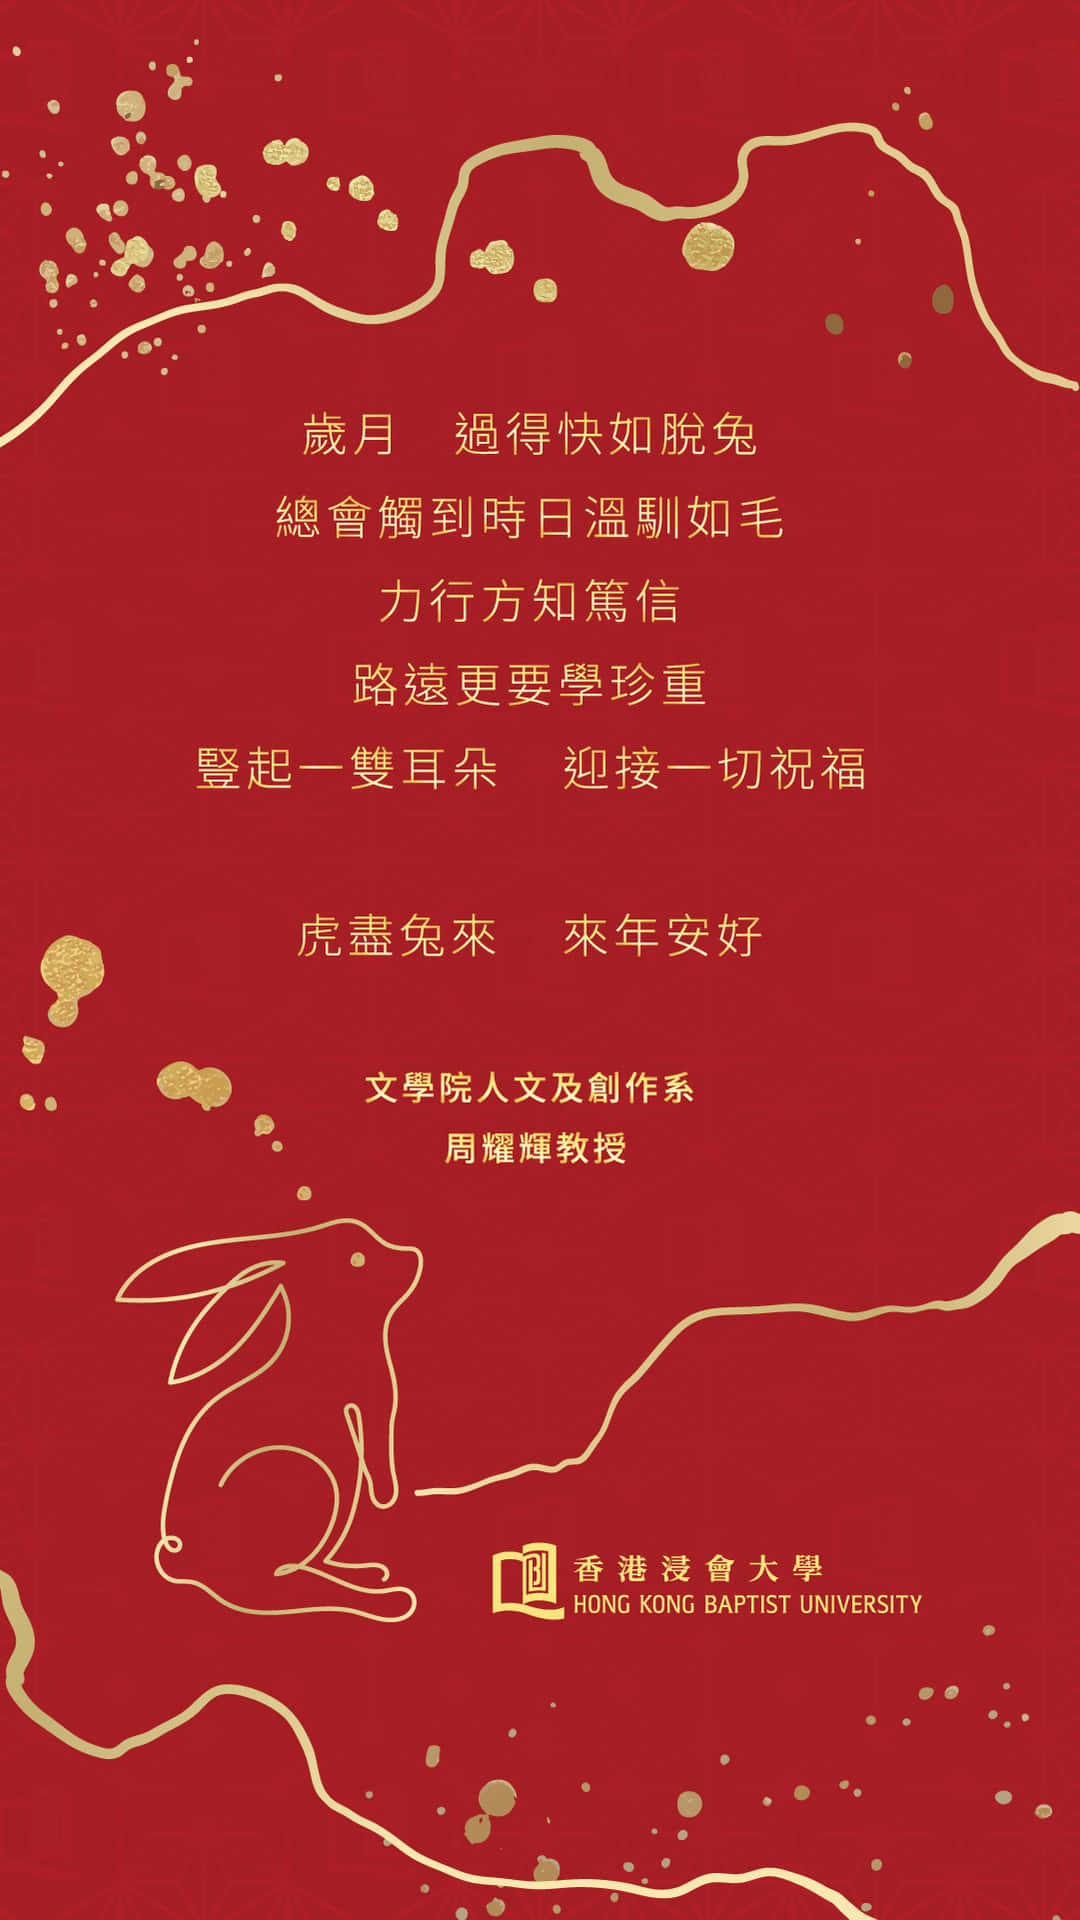 Chinesischesneujahrsgrußkarte Mit Einem Kaninchen. Wallpaper